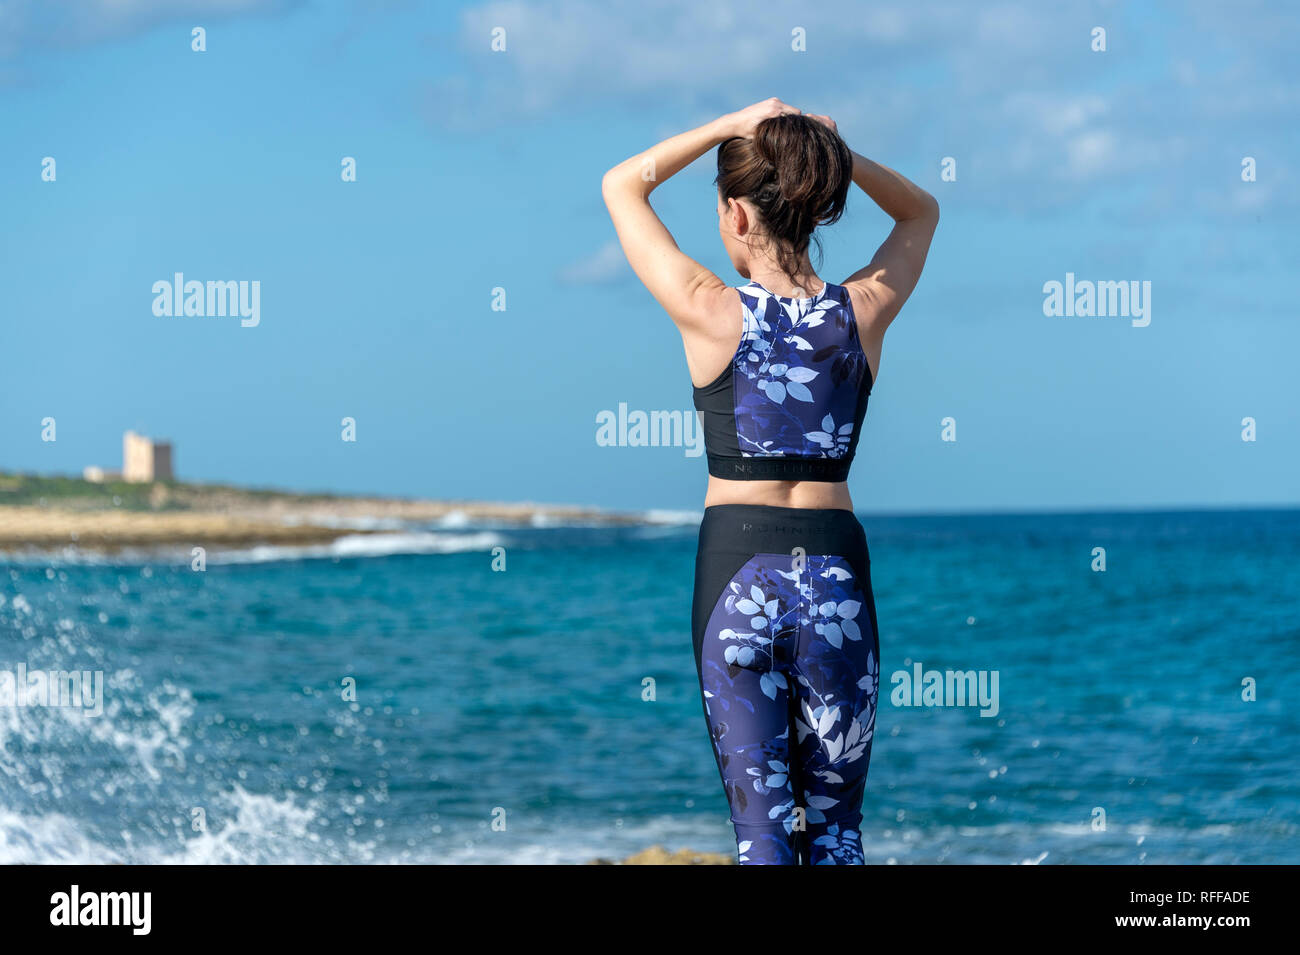 Sport Frau binden ihr Haar, Vorbereitung und Übung am Meer in der Sonne Stockfoto